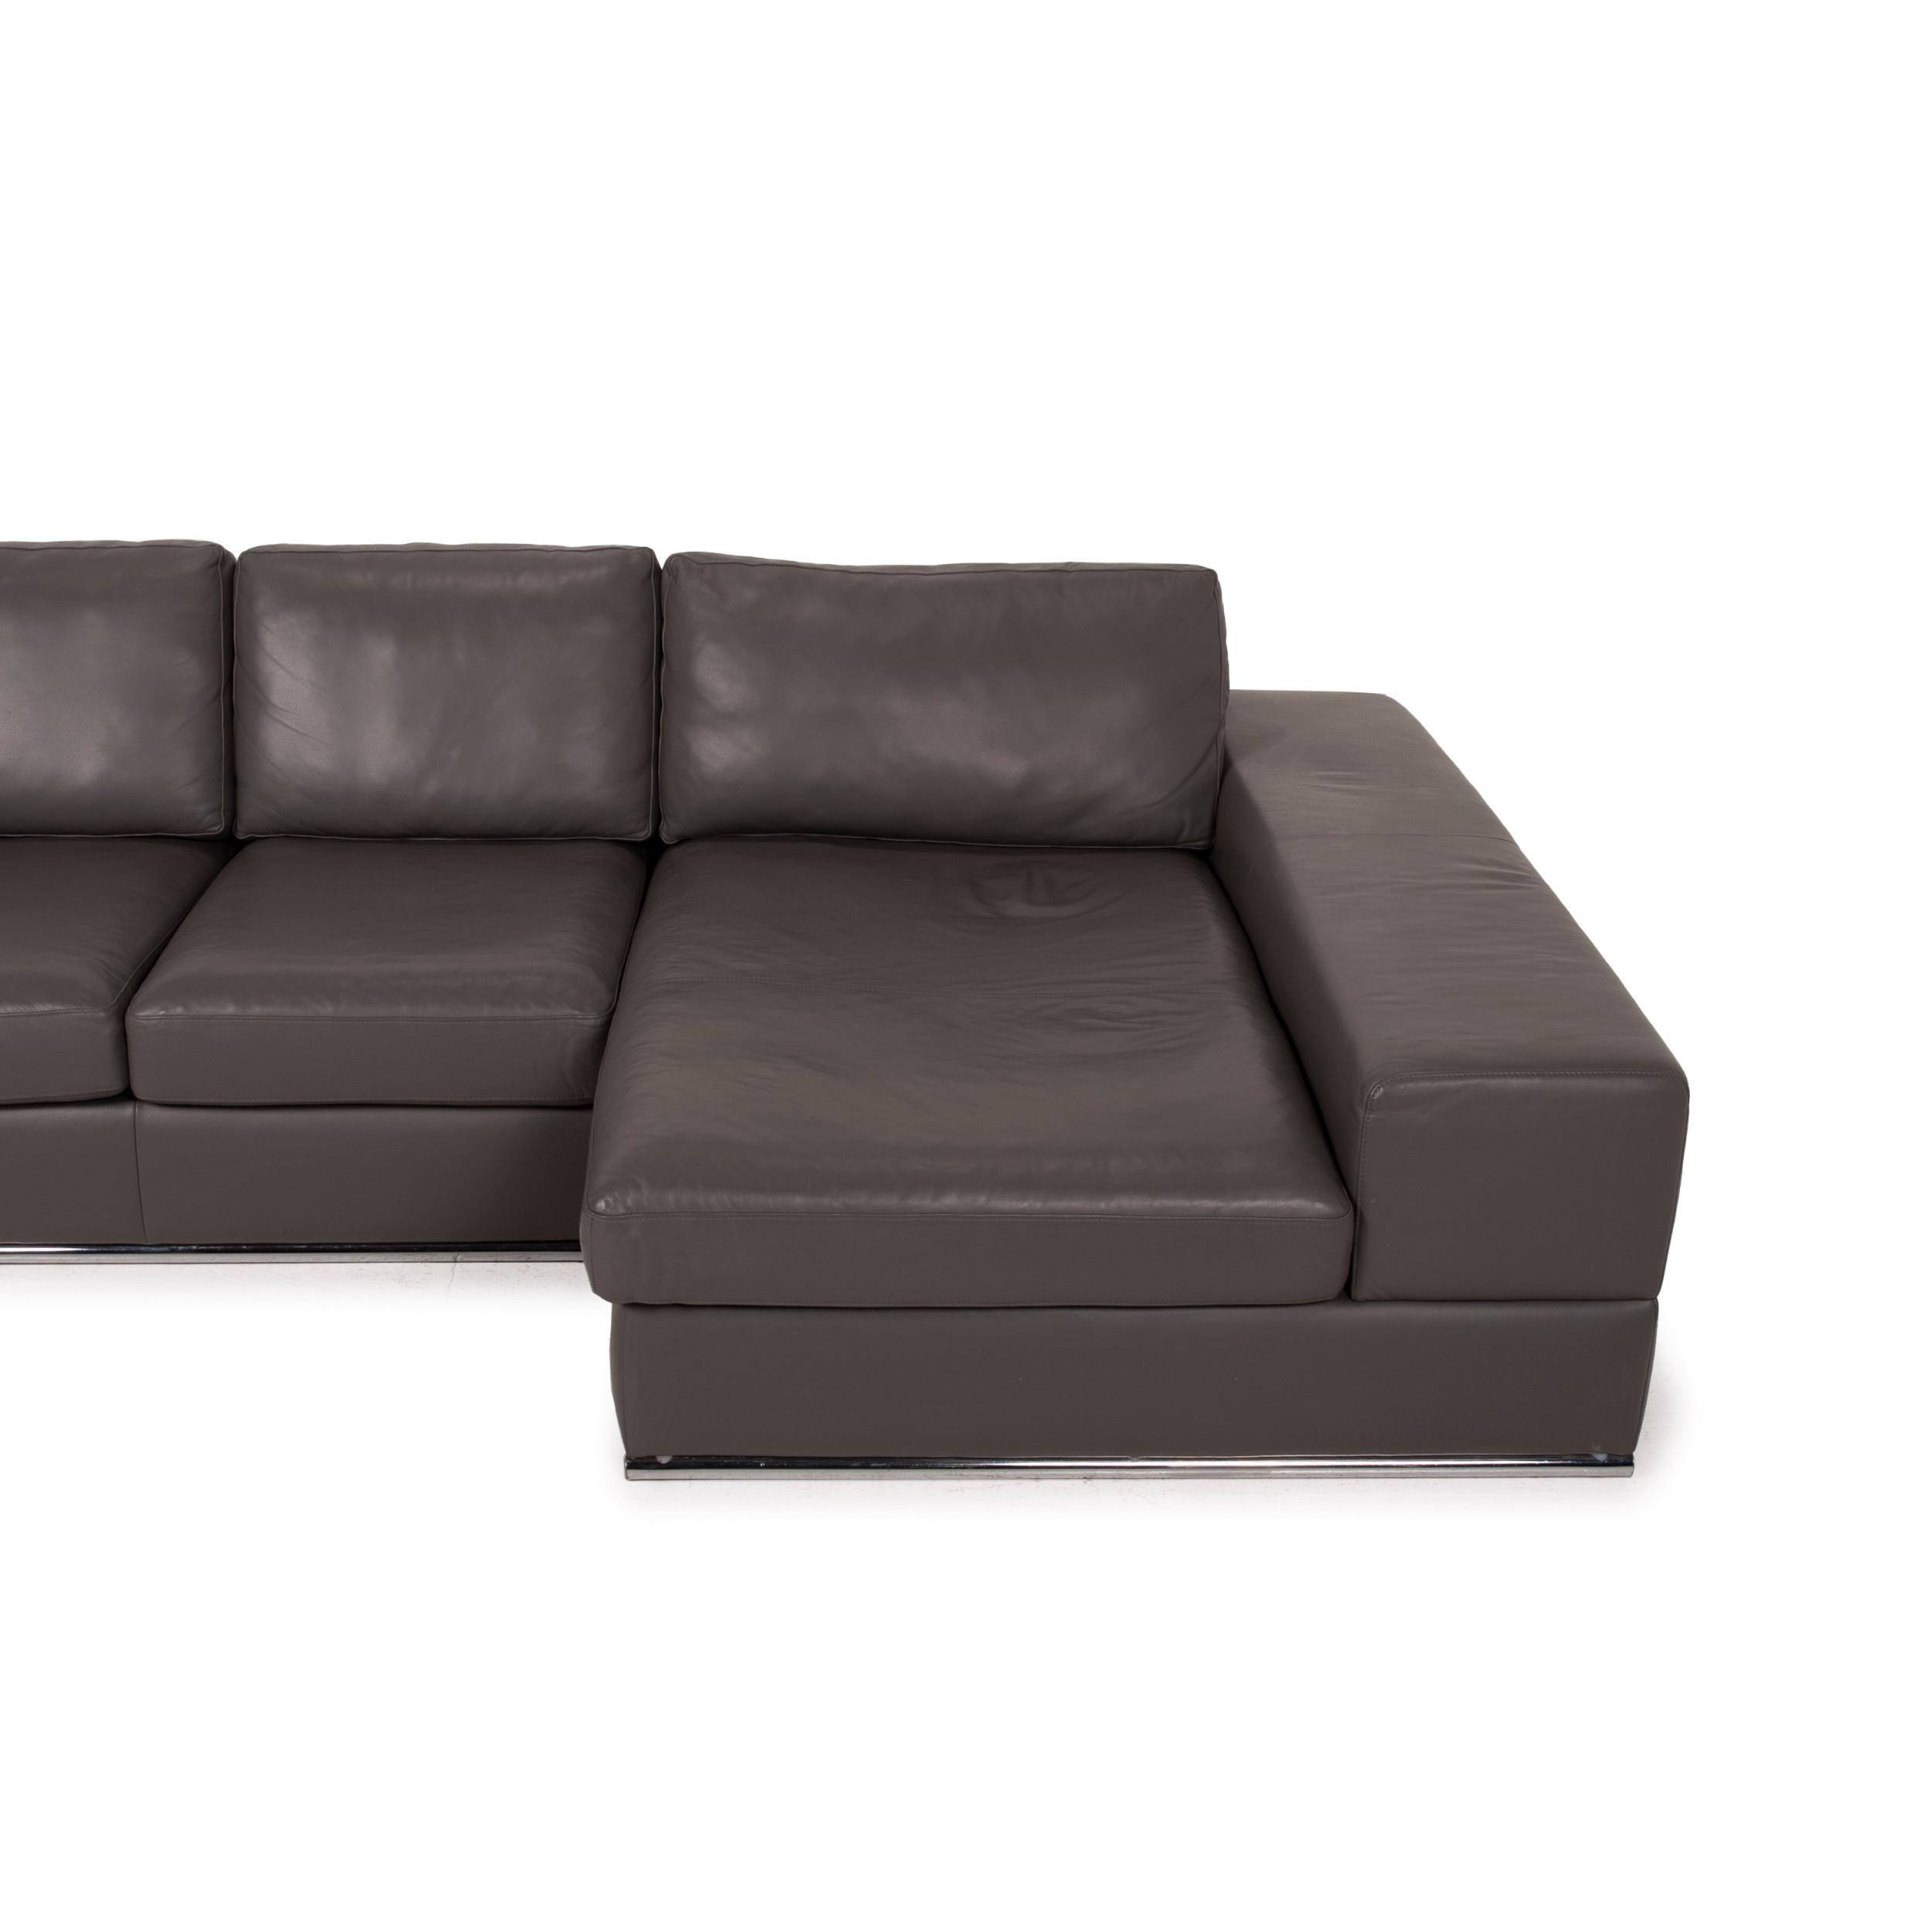 Musterring Leather Sofa Brown Corner Sofa 2